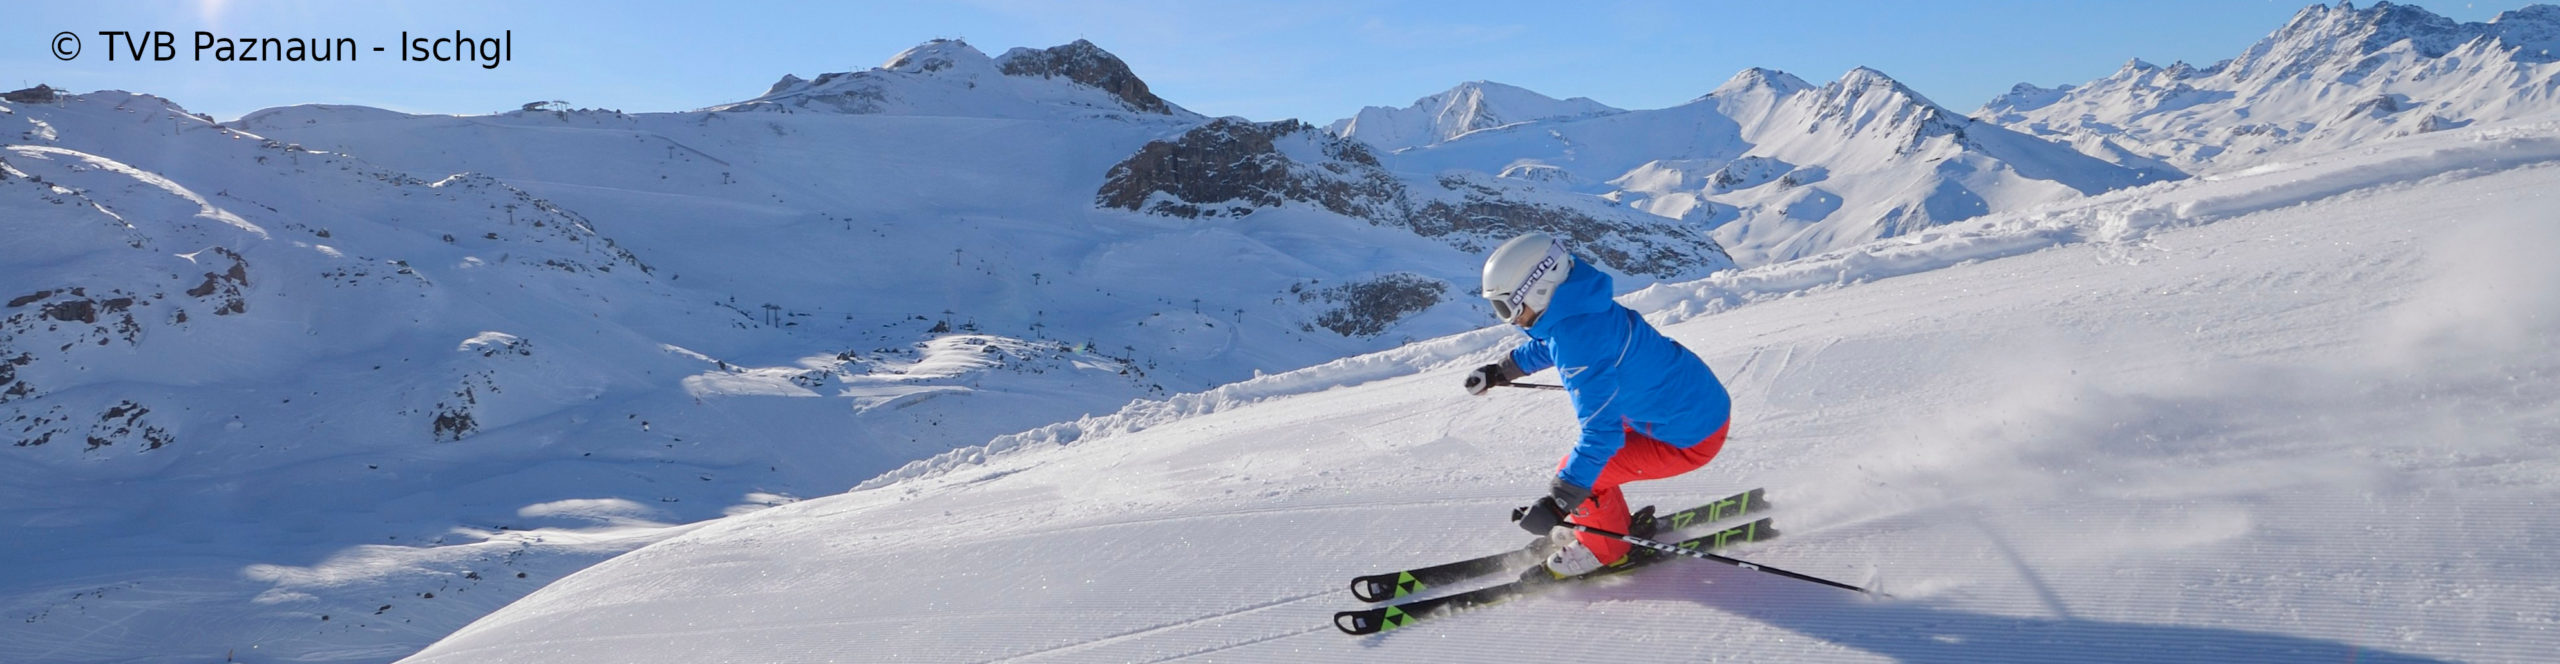 ISCHGL Opening- TOP OF THE MOUNTAIN CONCERT – Skiwochenende zum Sparpreis- 3 Sterne Hotel – ab Freitag Nachmittag 